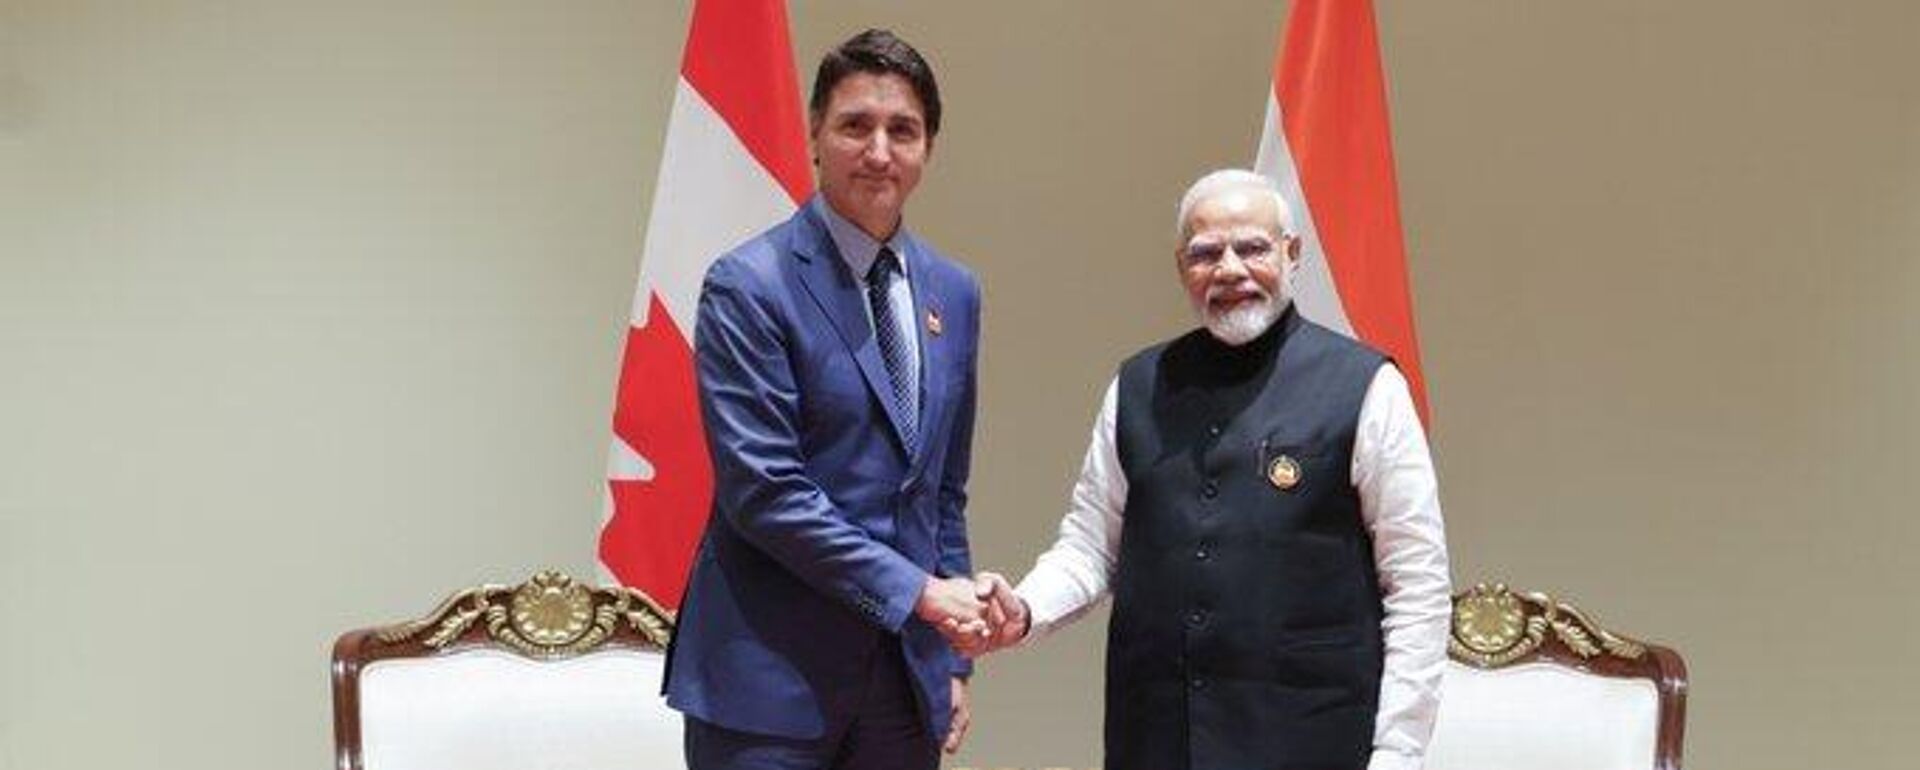 Los primeros ministros Narendra Modi, de la India, y Justin Trudeau, de Canadá habrían abordado el tema de asesinato del activista sij durante la cumbre del G20 en Nueva Delhí. - Sputnik Mundo, 1920, 20.09.2023